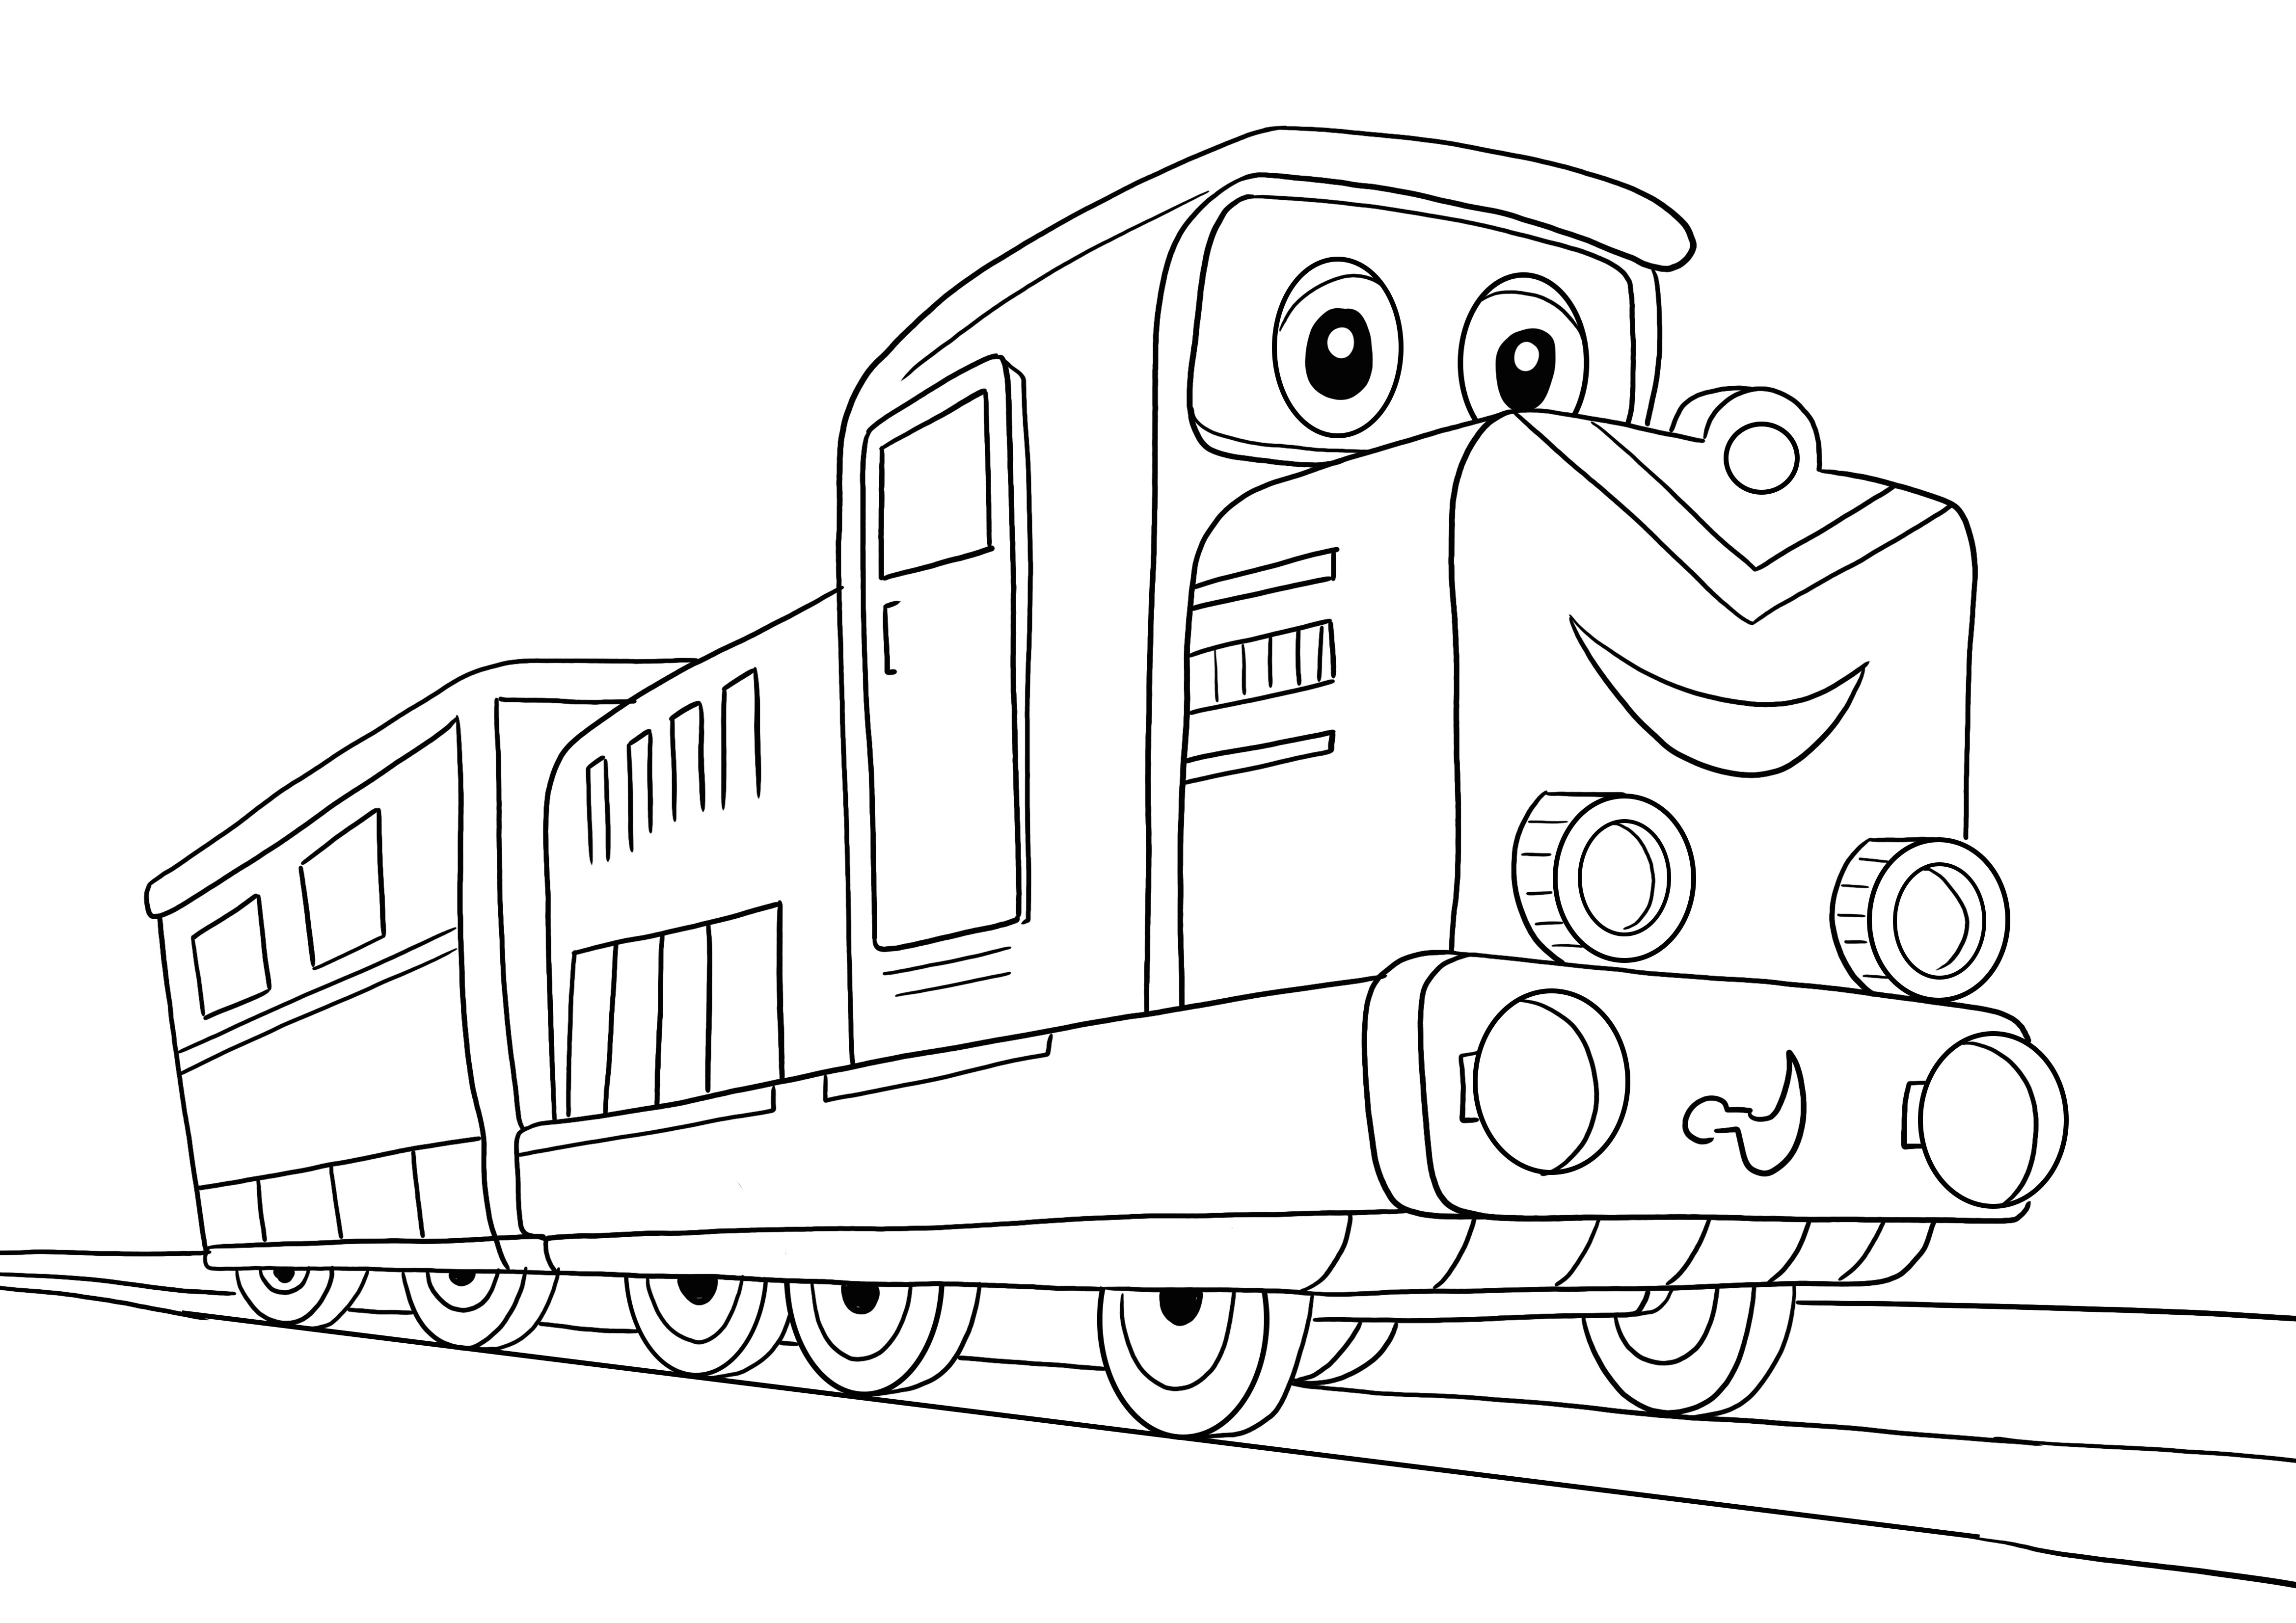 Inilah gambar mewarnai kereta Kartun kami untuk dipelajari anak-anak dengan menyenangkan